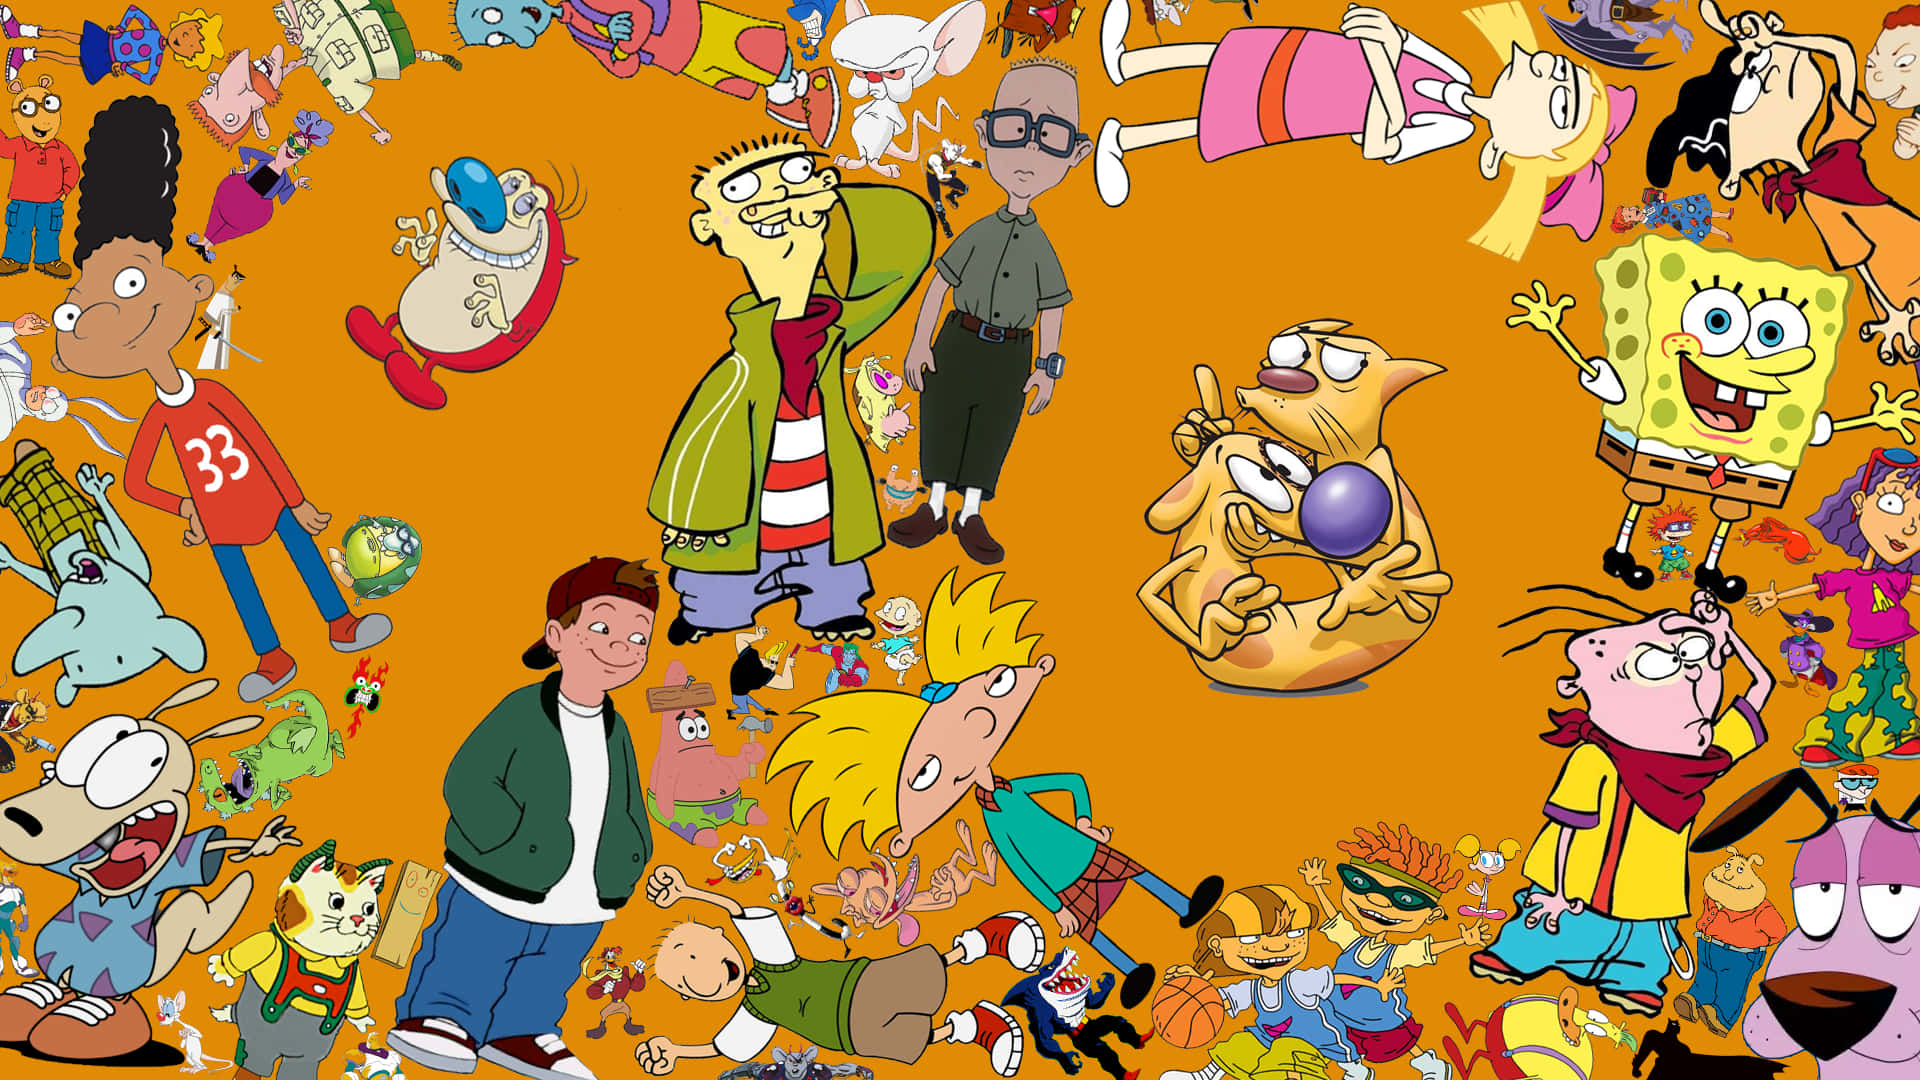 Vielspaß Mit Deinen Lieblingsfiguren Von Nickelodeon! Wallpaper